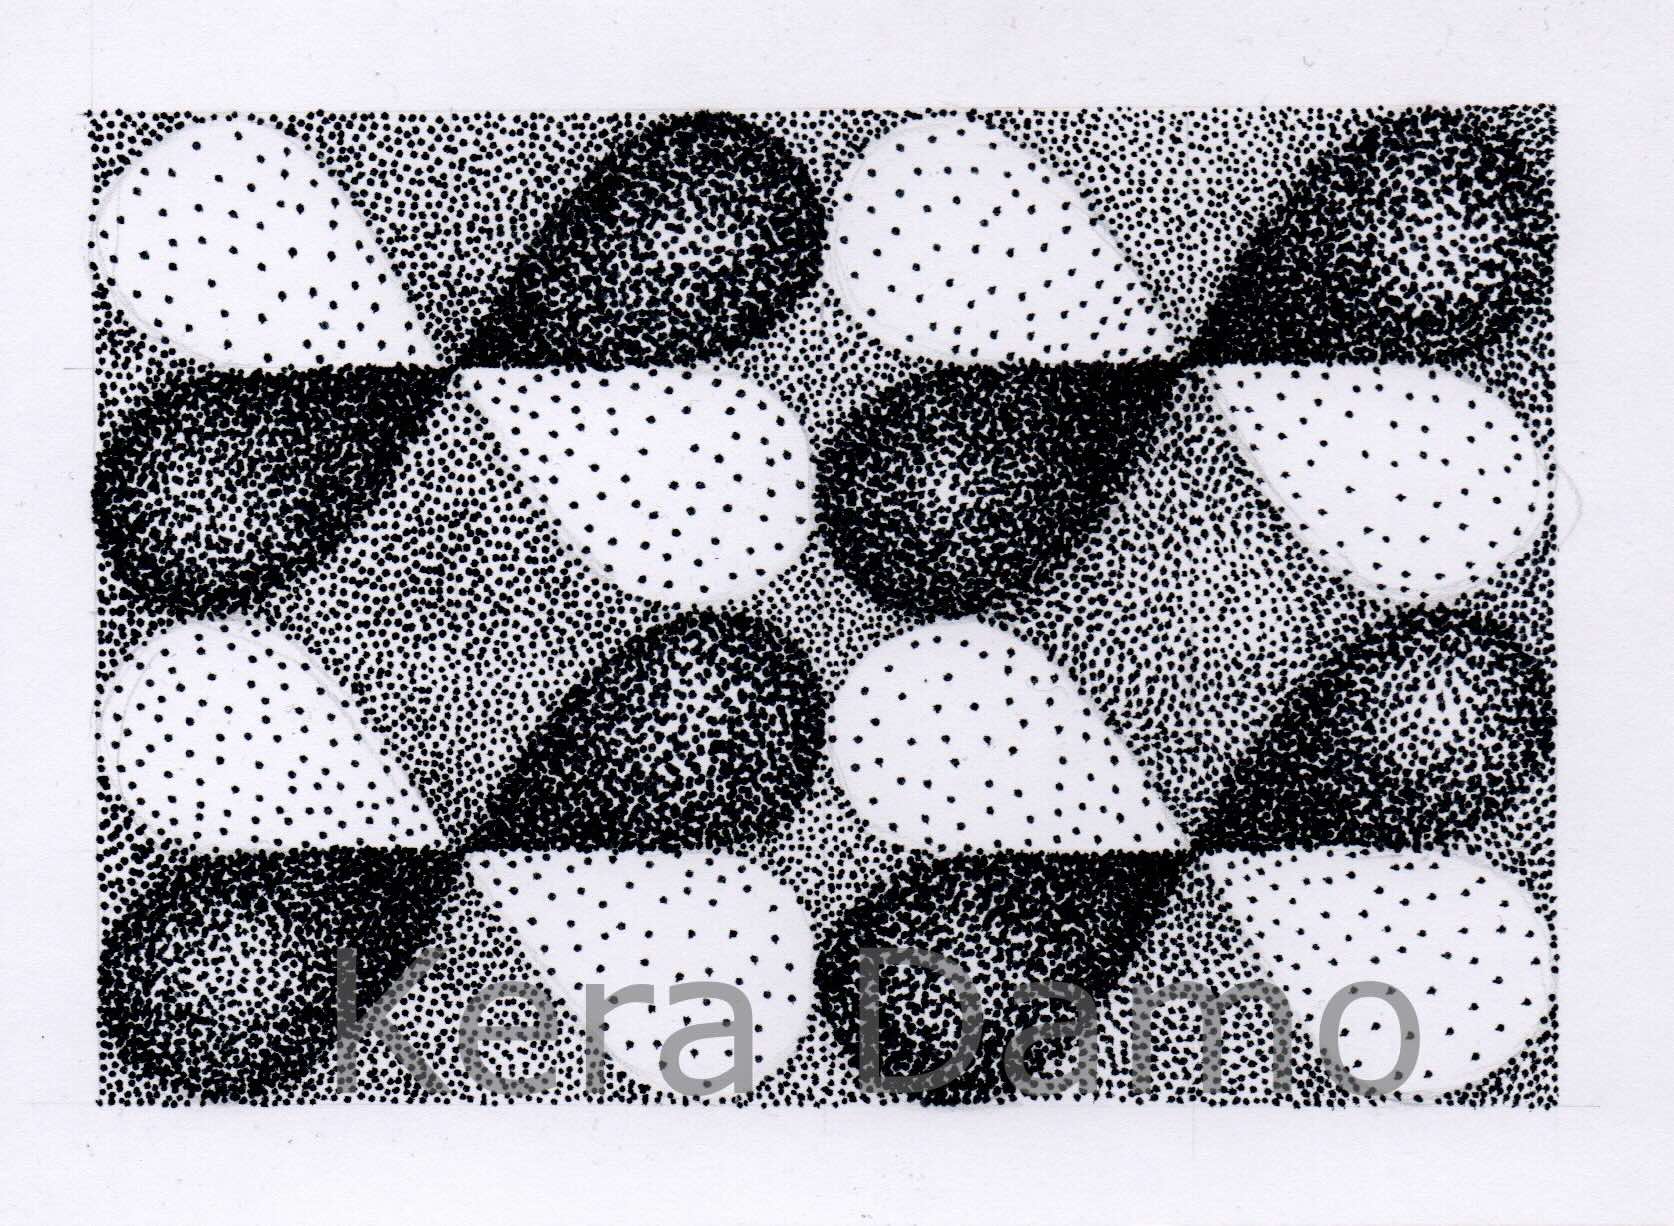 A black and white pen drawing as part of the Jippie Stippie series, made by visual artist Kera Damo from the Hague / Een zwart wit pentekening als onderdeel van de Jippie Stippie serie, gemaakt door beeldend kunstenaar Kera Damo uit Den Haag